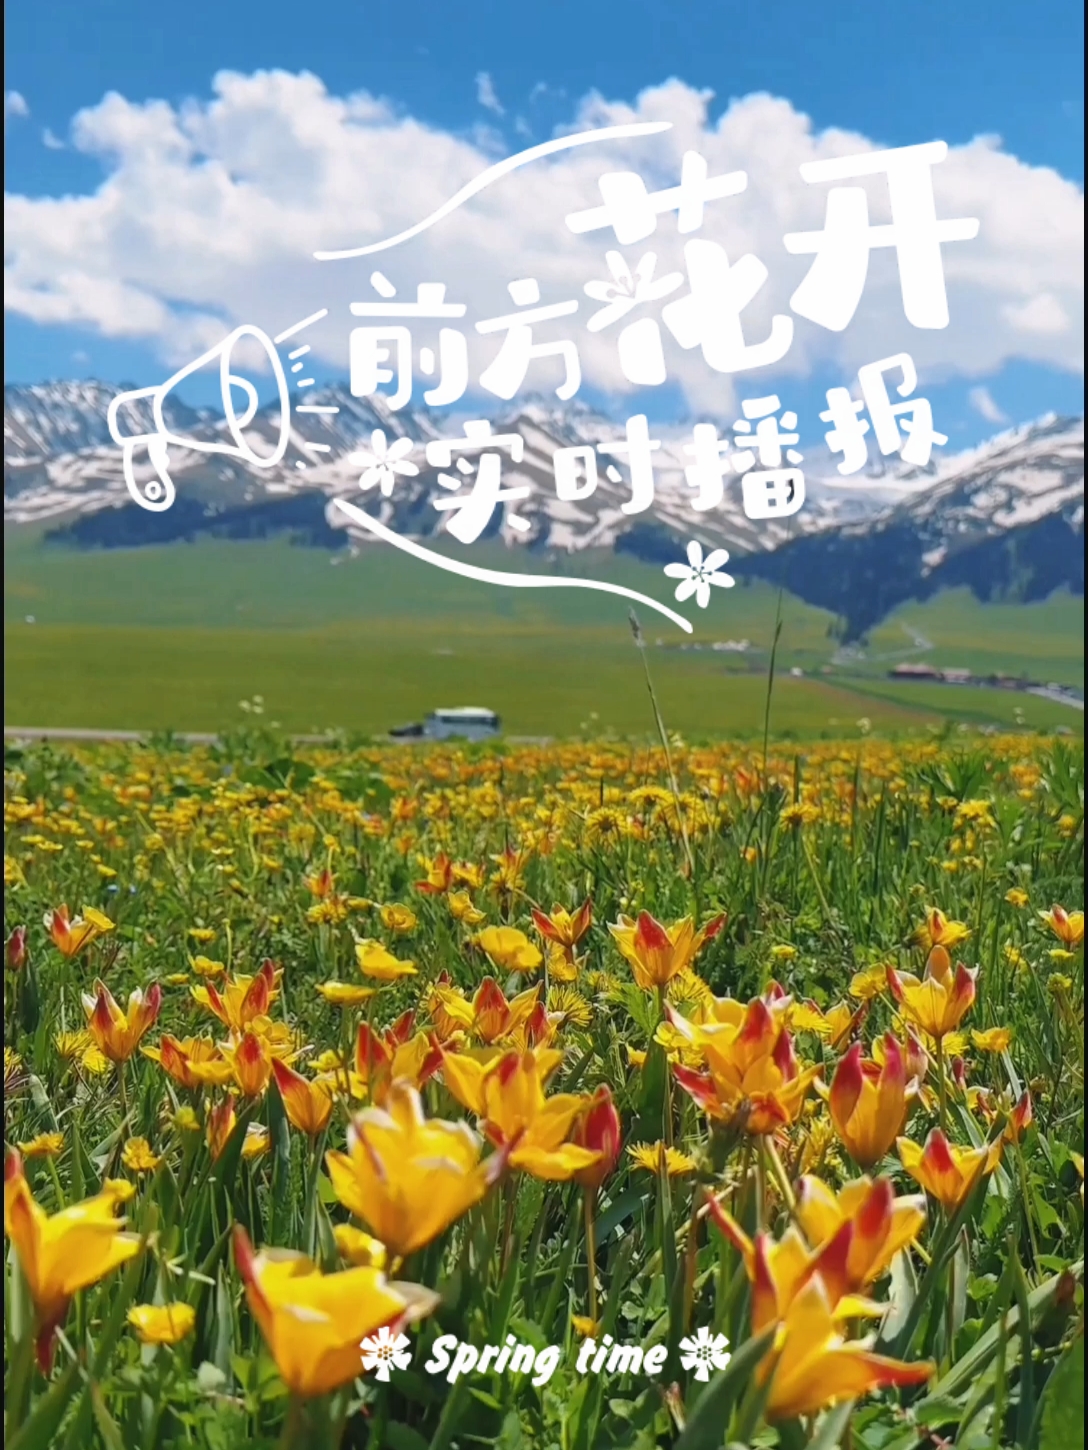 当遍地五颜六色野花盛开的时候，伊犁河谷美出了天际！#来新疆那拉提看花海吧 #旅行大玩家 #新疆旅游 